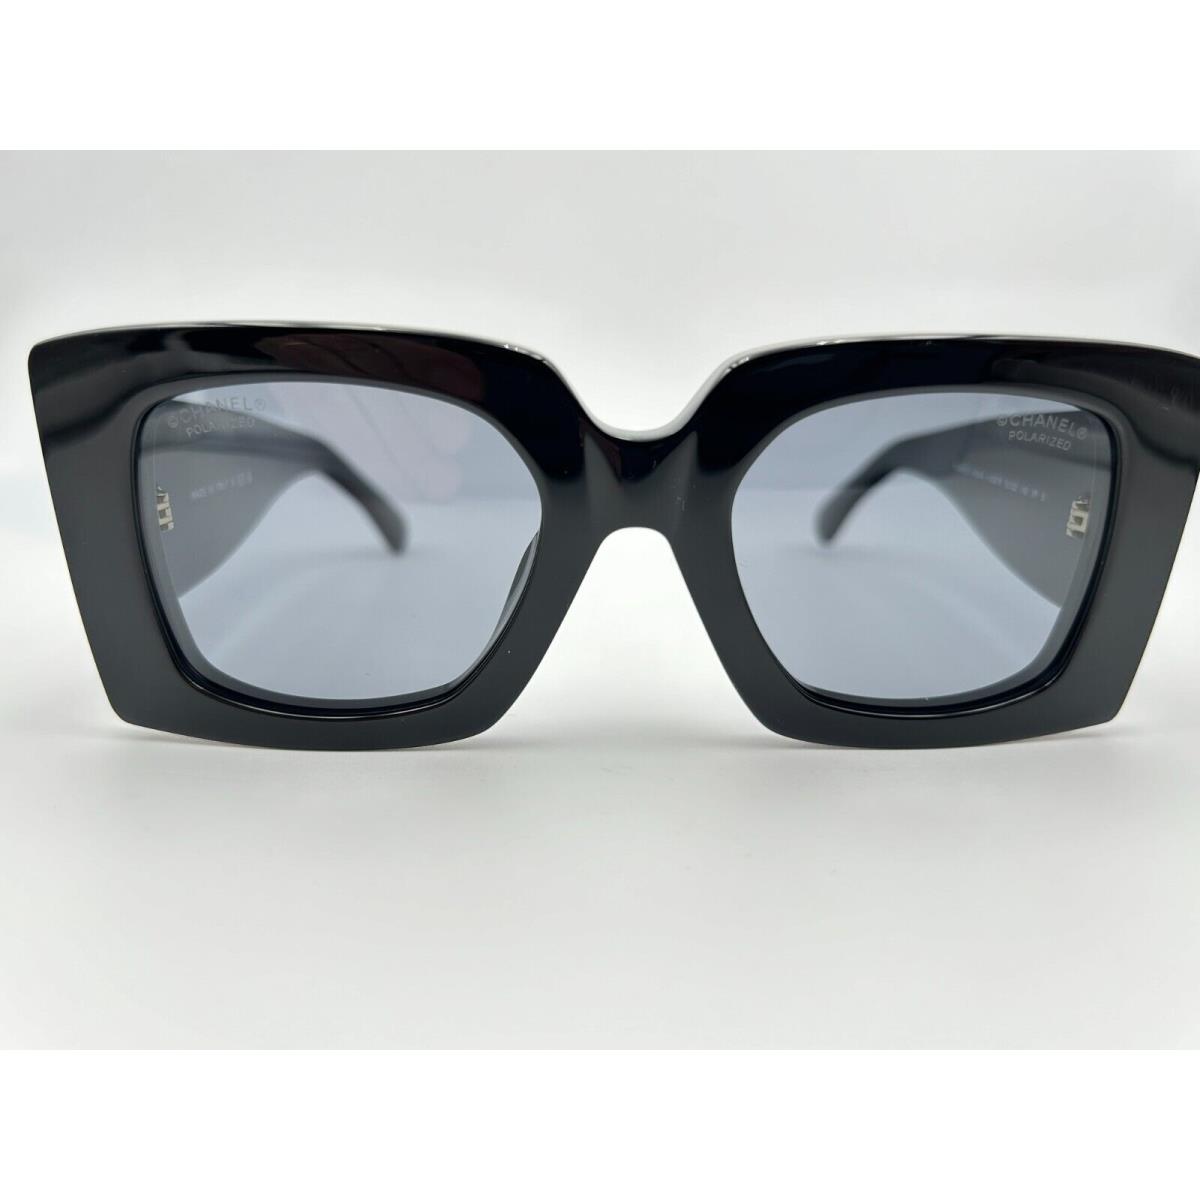 Chanel Polarized Sunglasses 5480-H c 622/T8 Black Gray Square